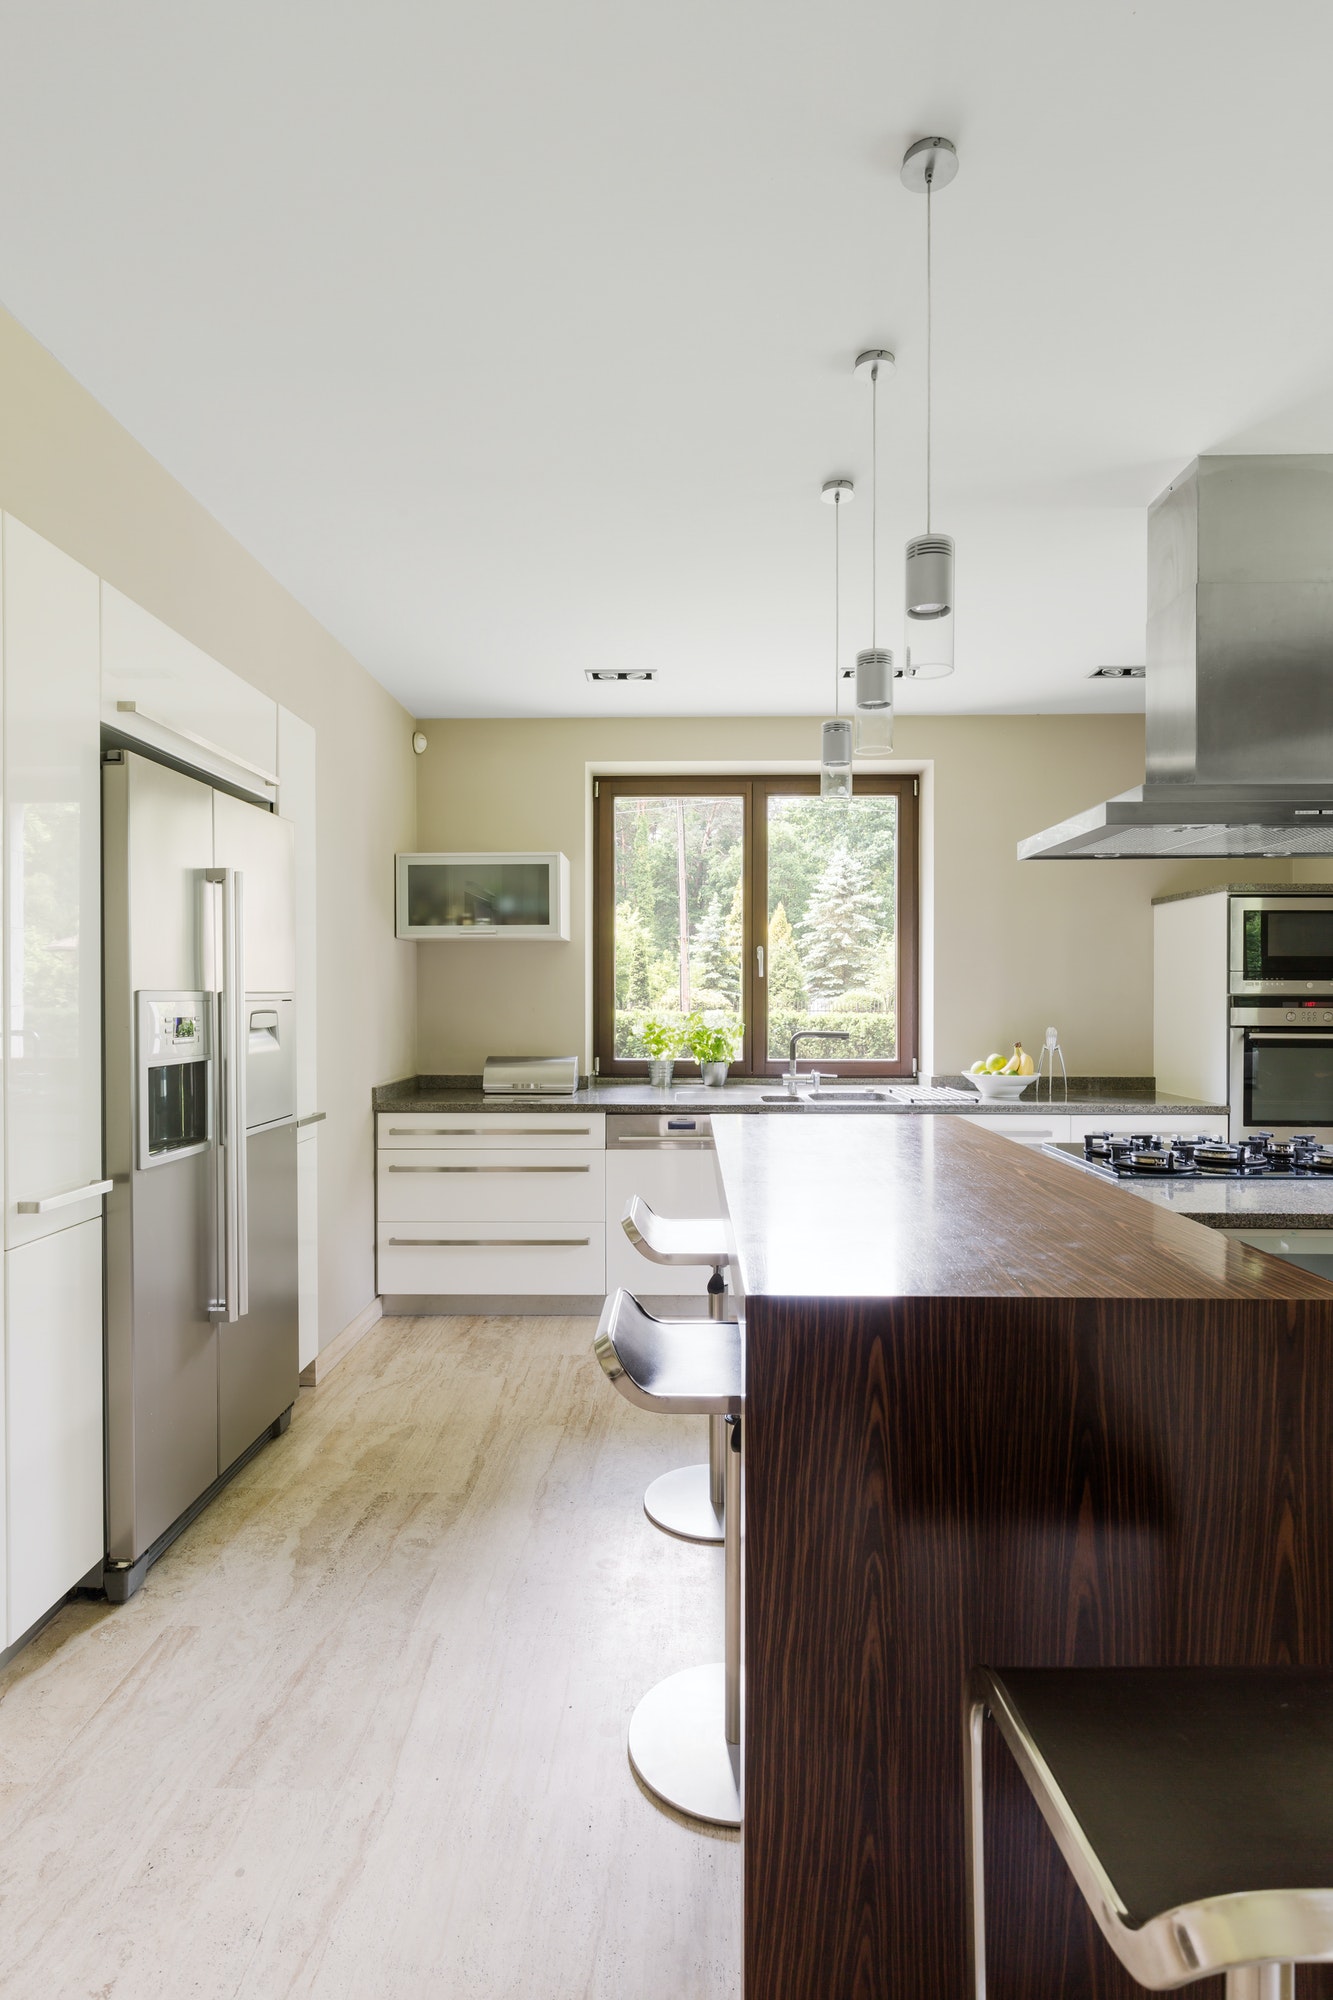 Modern kitchen with kitchen island